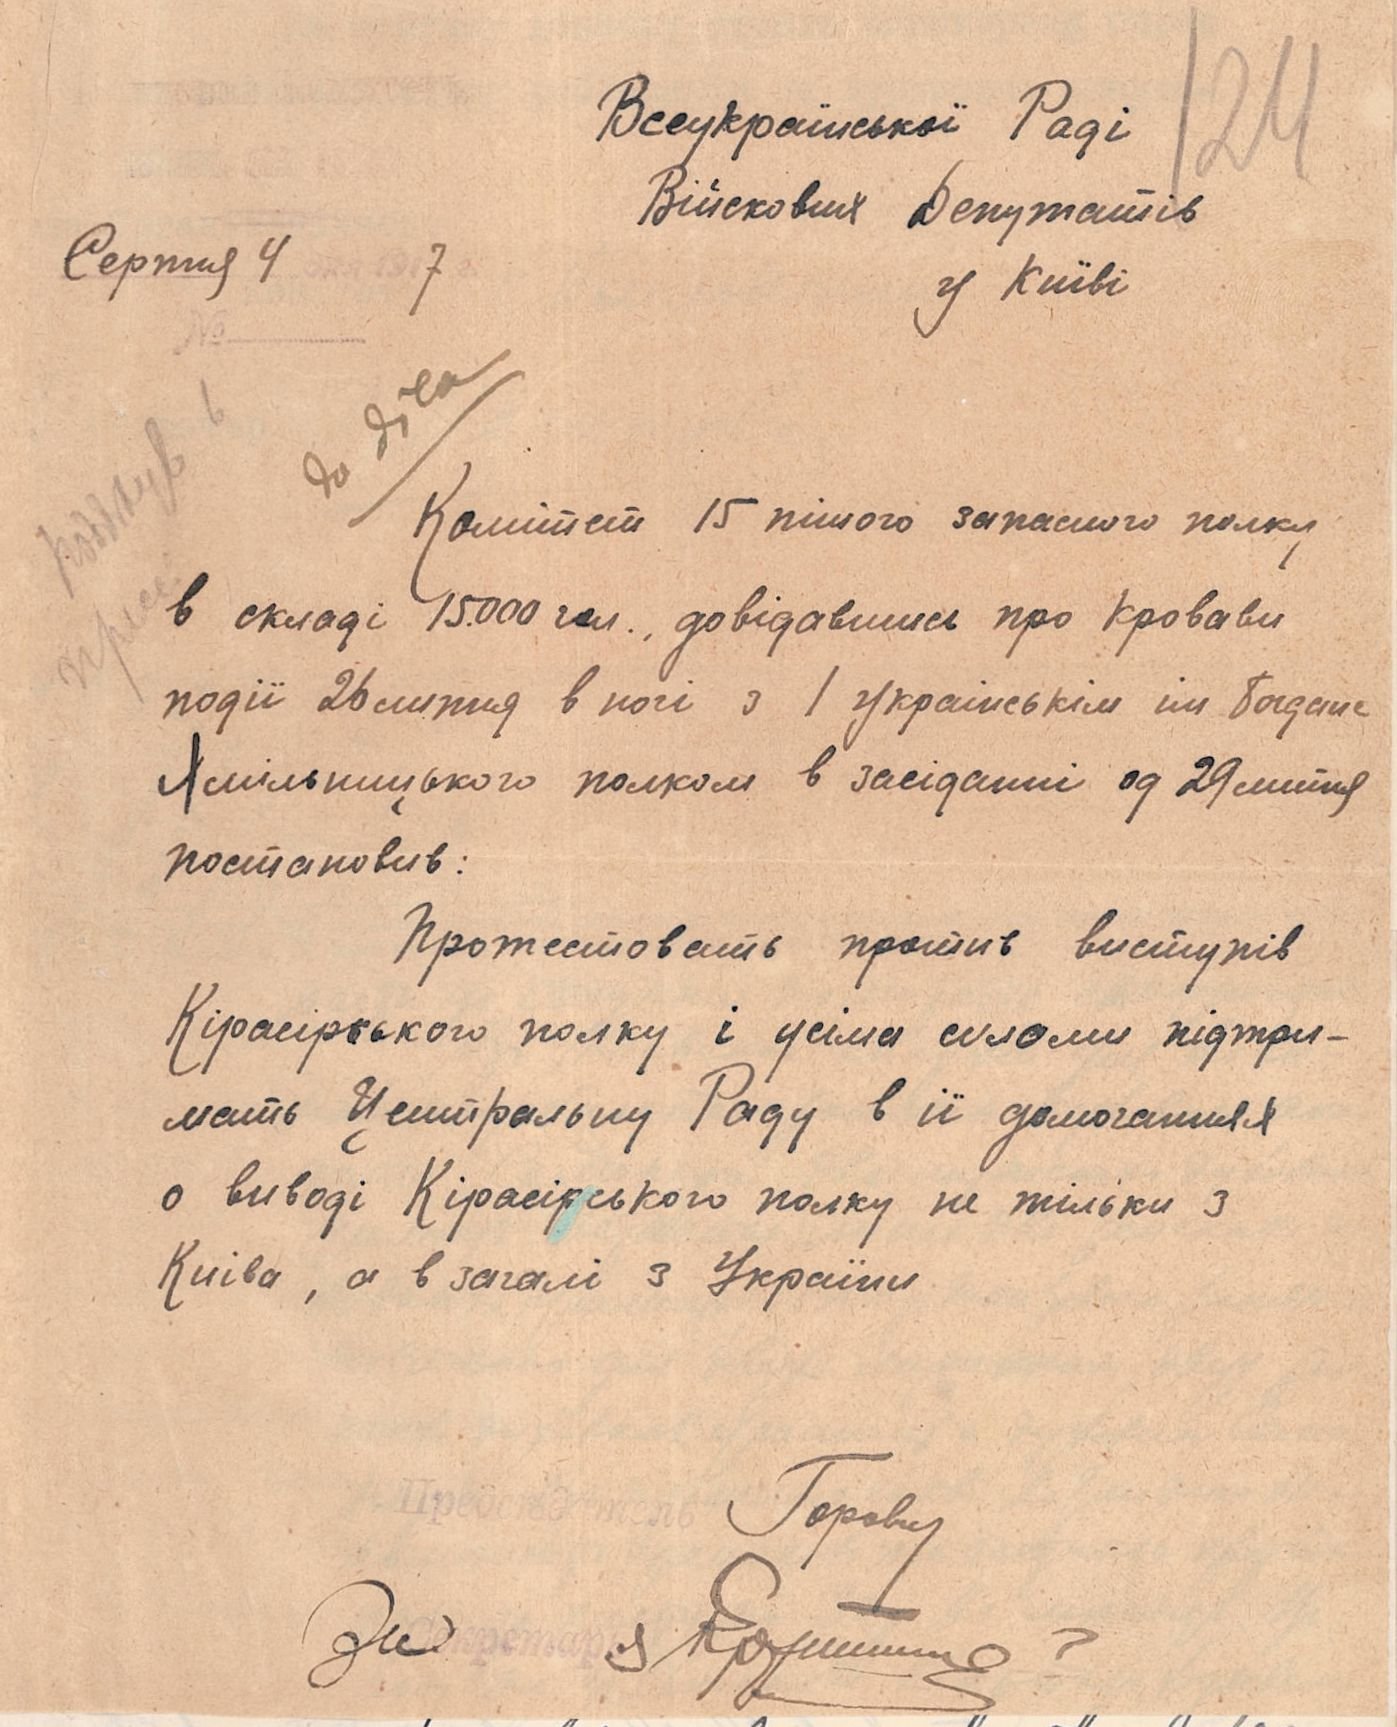 Звернення 15 пішого запасного полку до Всеукраїнської ради військових депутатів з приводу подій 26 липня 1917 р. 04 серпня 1917 р.